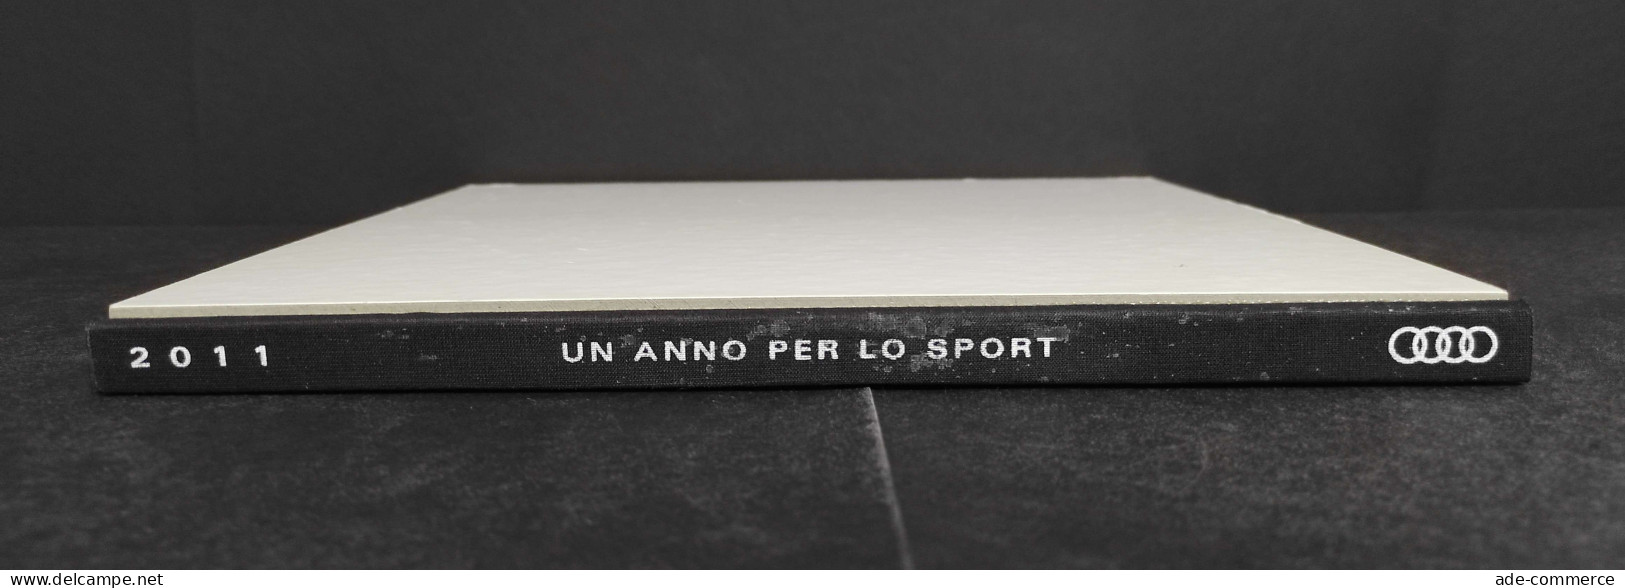 Audi - Un Anno Per Lo Sport - 2011 - Sports